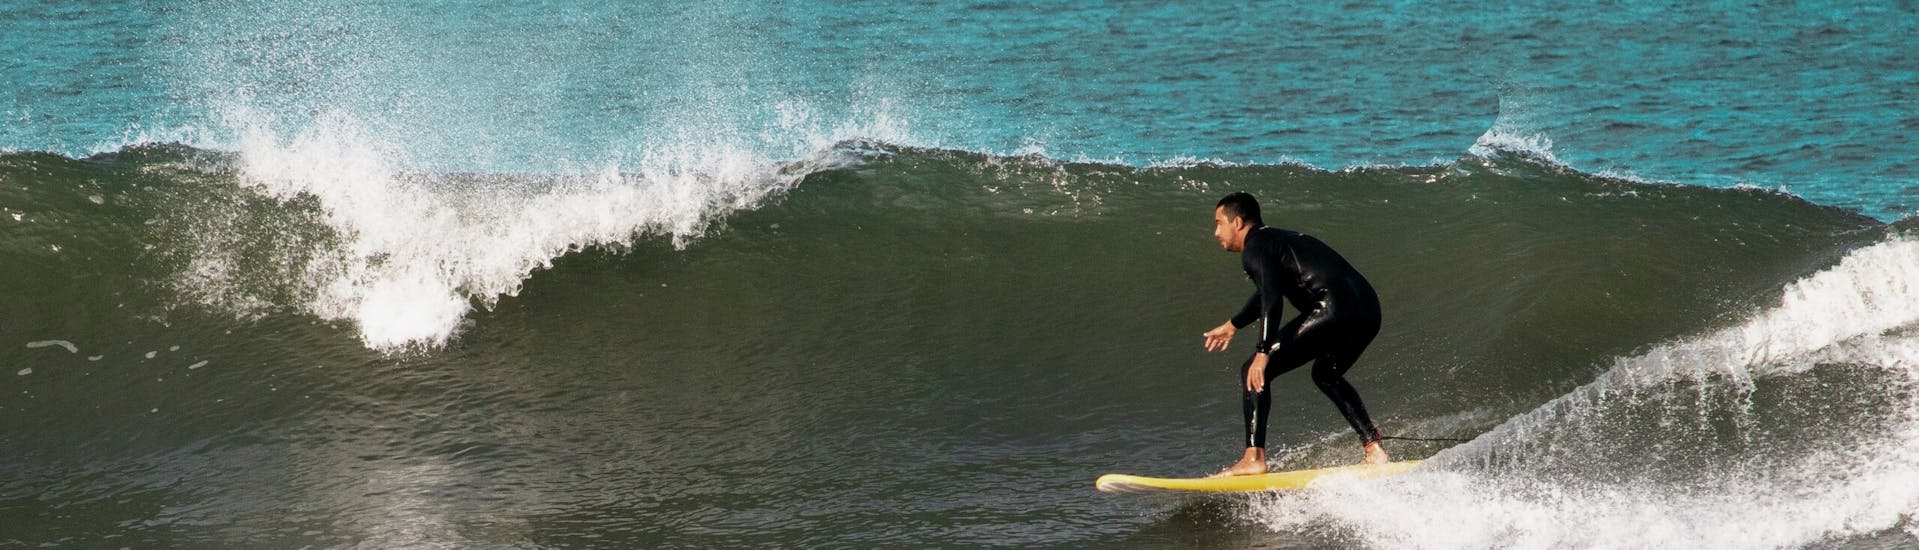 Eine Person surft während eines privaten Surfkurses in der Nähe von Porto mit der Pura Vida Surfing School.